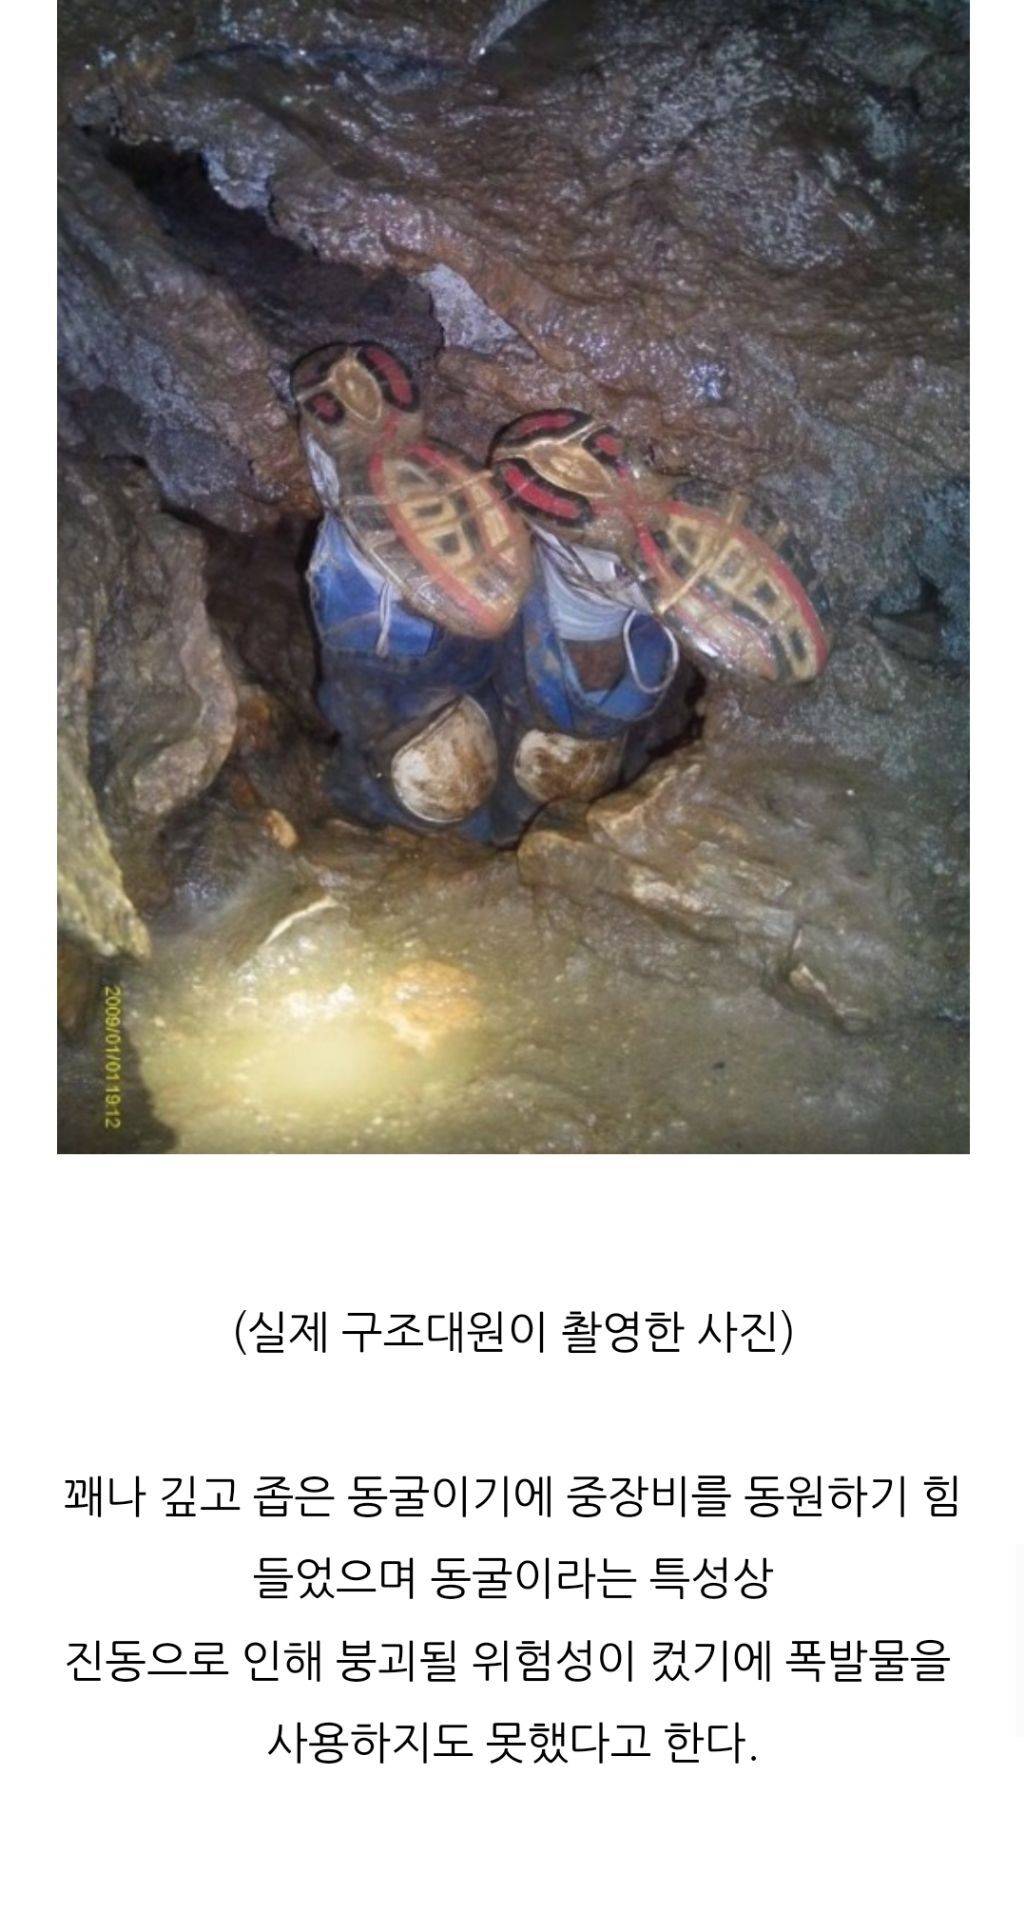 사망사고로 인해 현재는 폐쇄된 '너디 퍼티 동굴' 사망사건 | 인스티즈